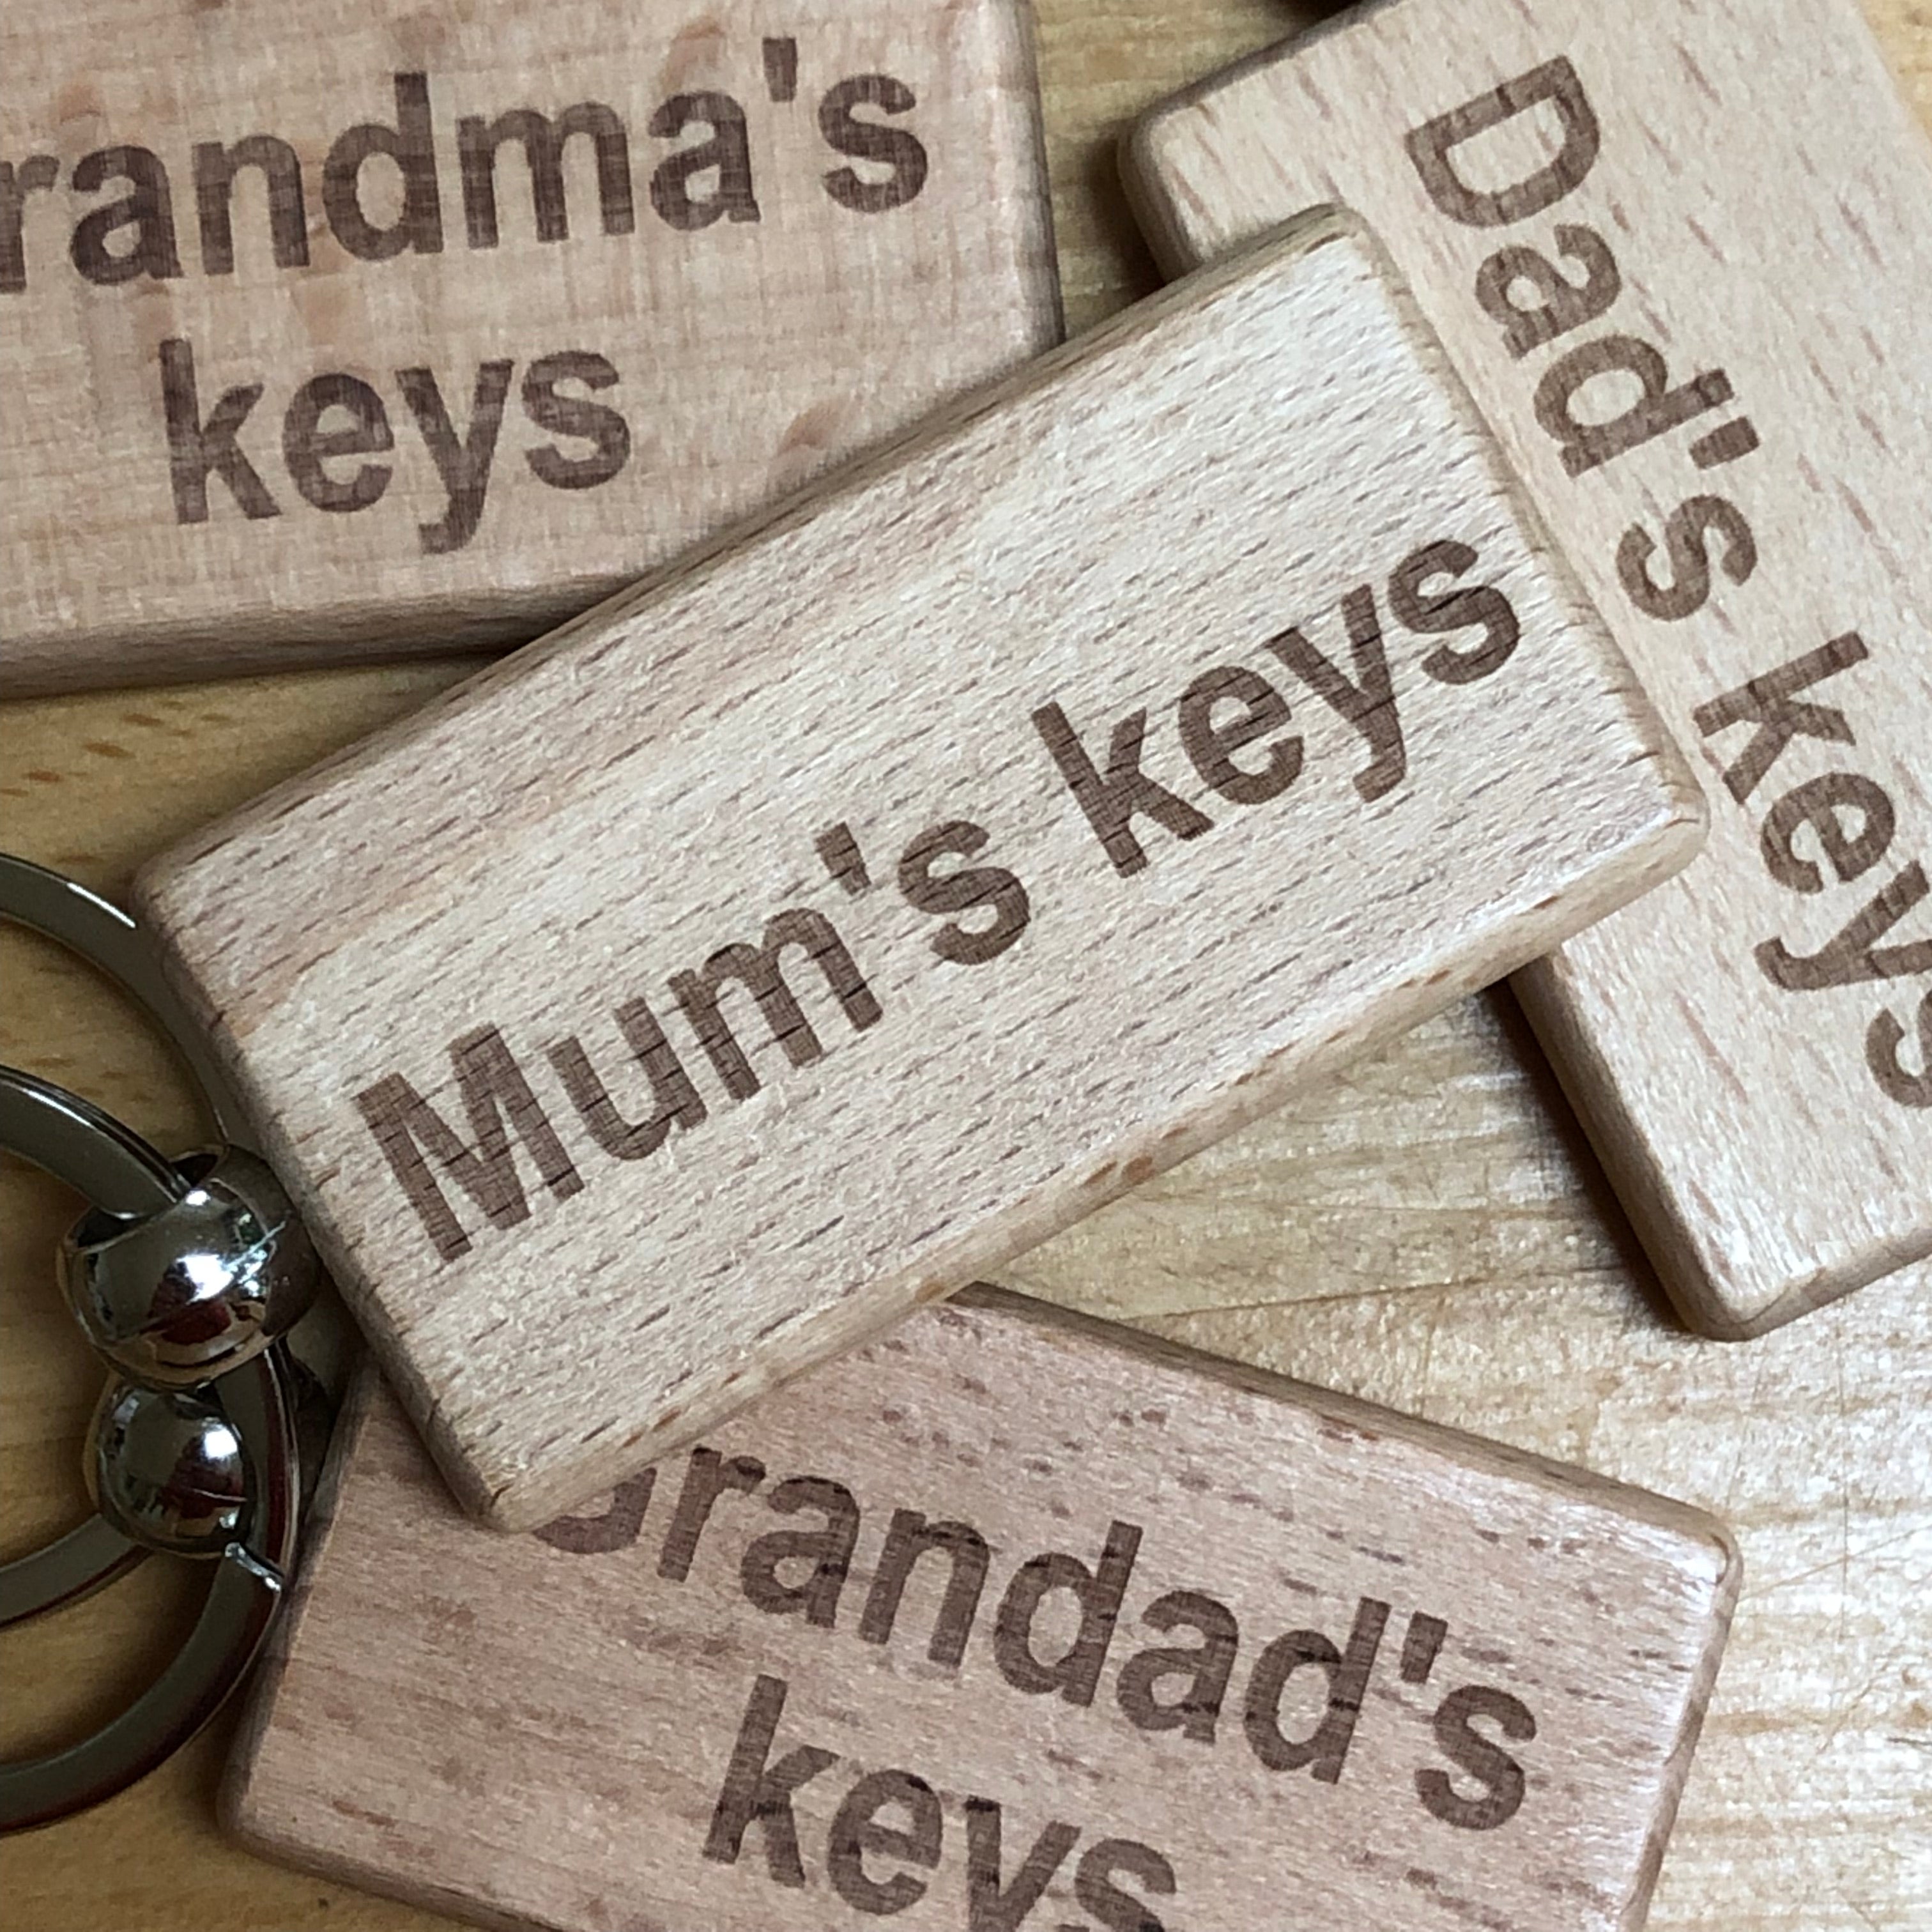 Keyrings for family members